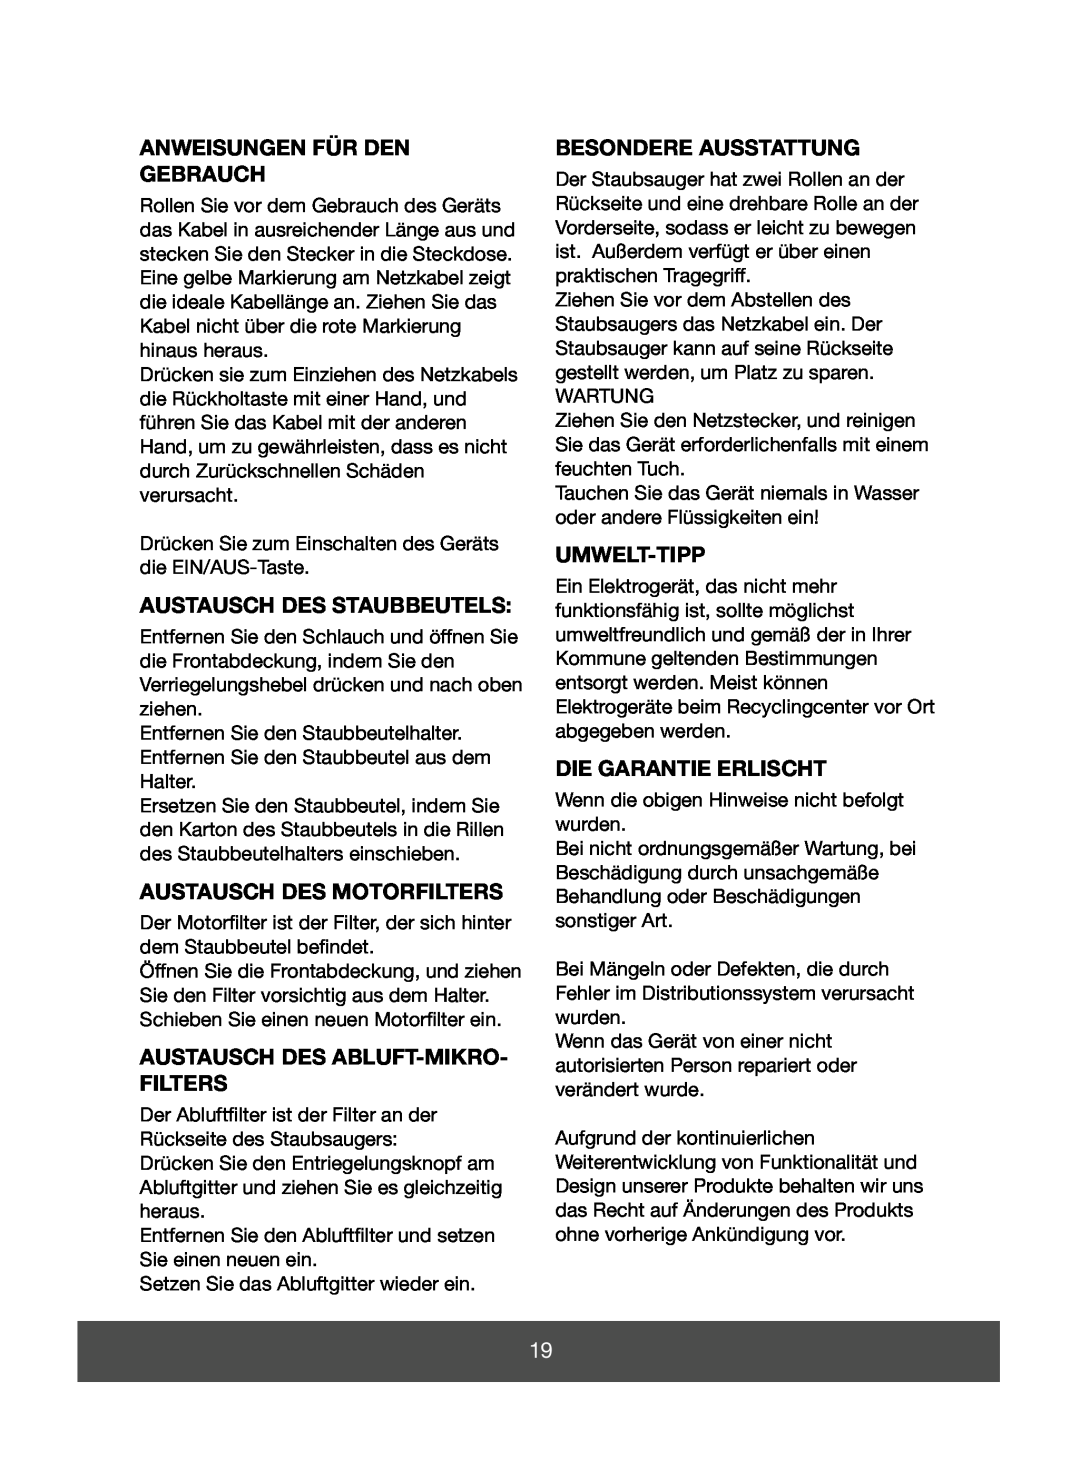 Melissa 640-142 manual Anweisungen Für Den Gebrauch, Austausch Des Staubbeutels, Austausch Des Motorfilters, Umwelt-Tipp 